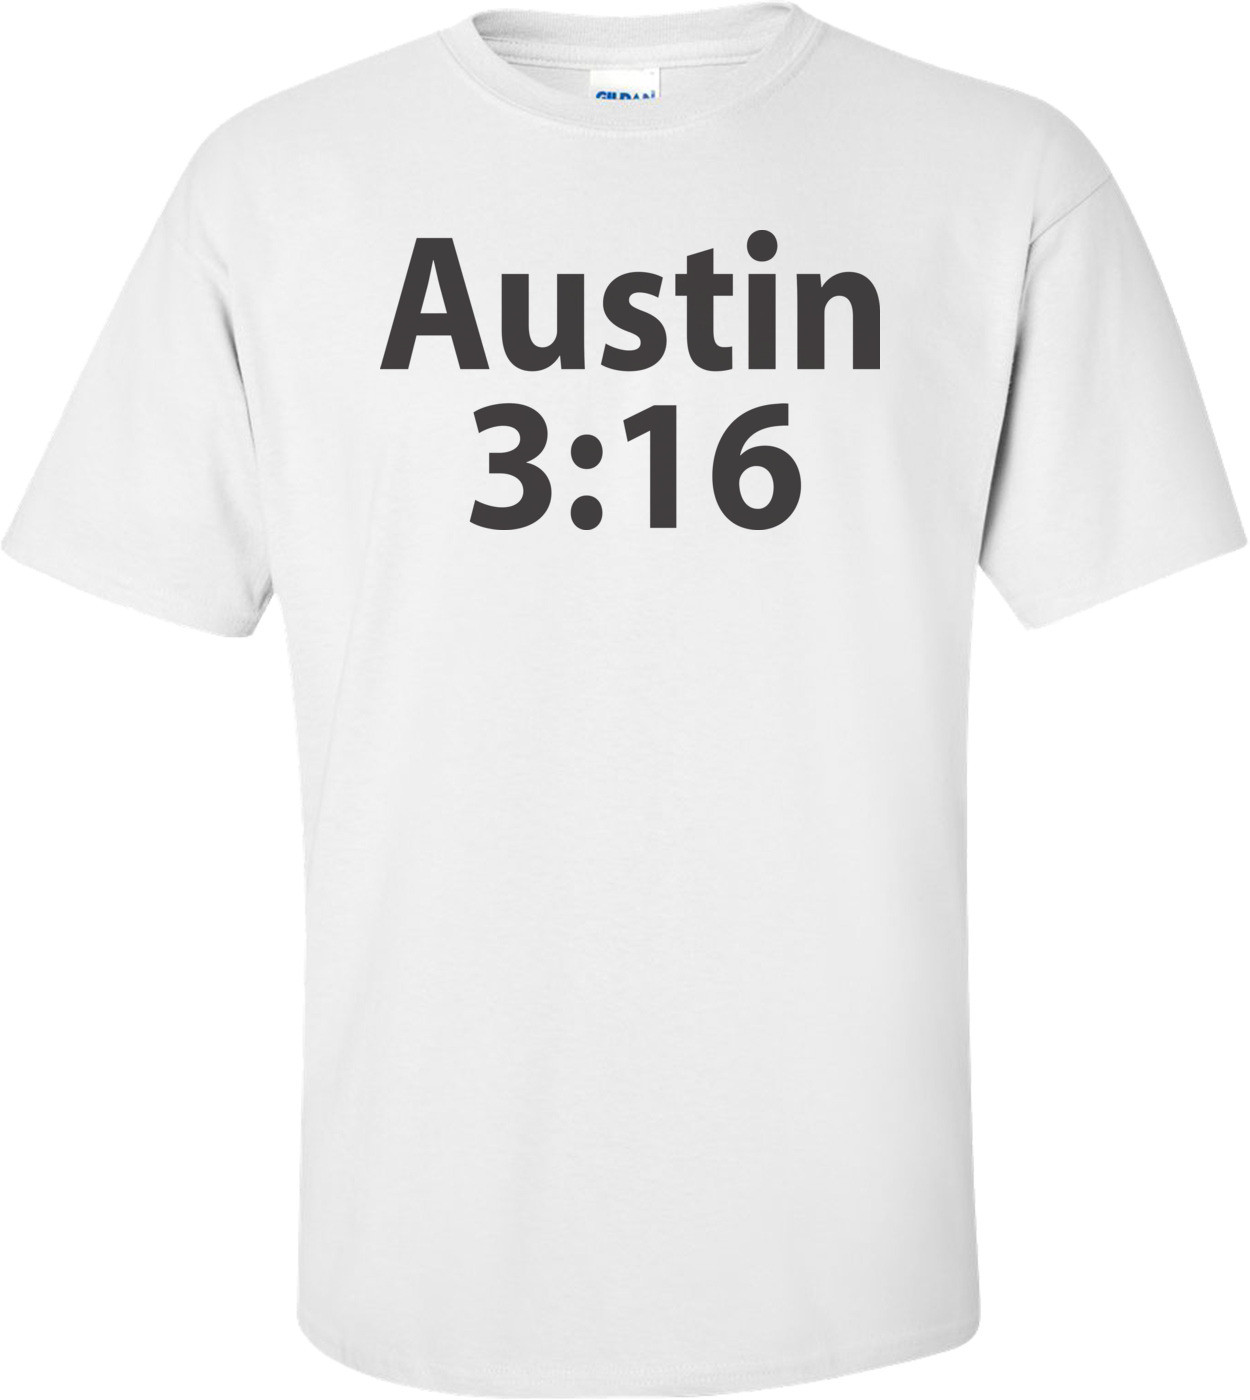 Austin 3:16 T-shirt